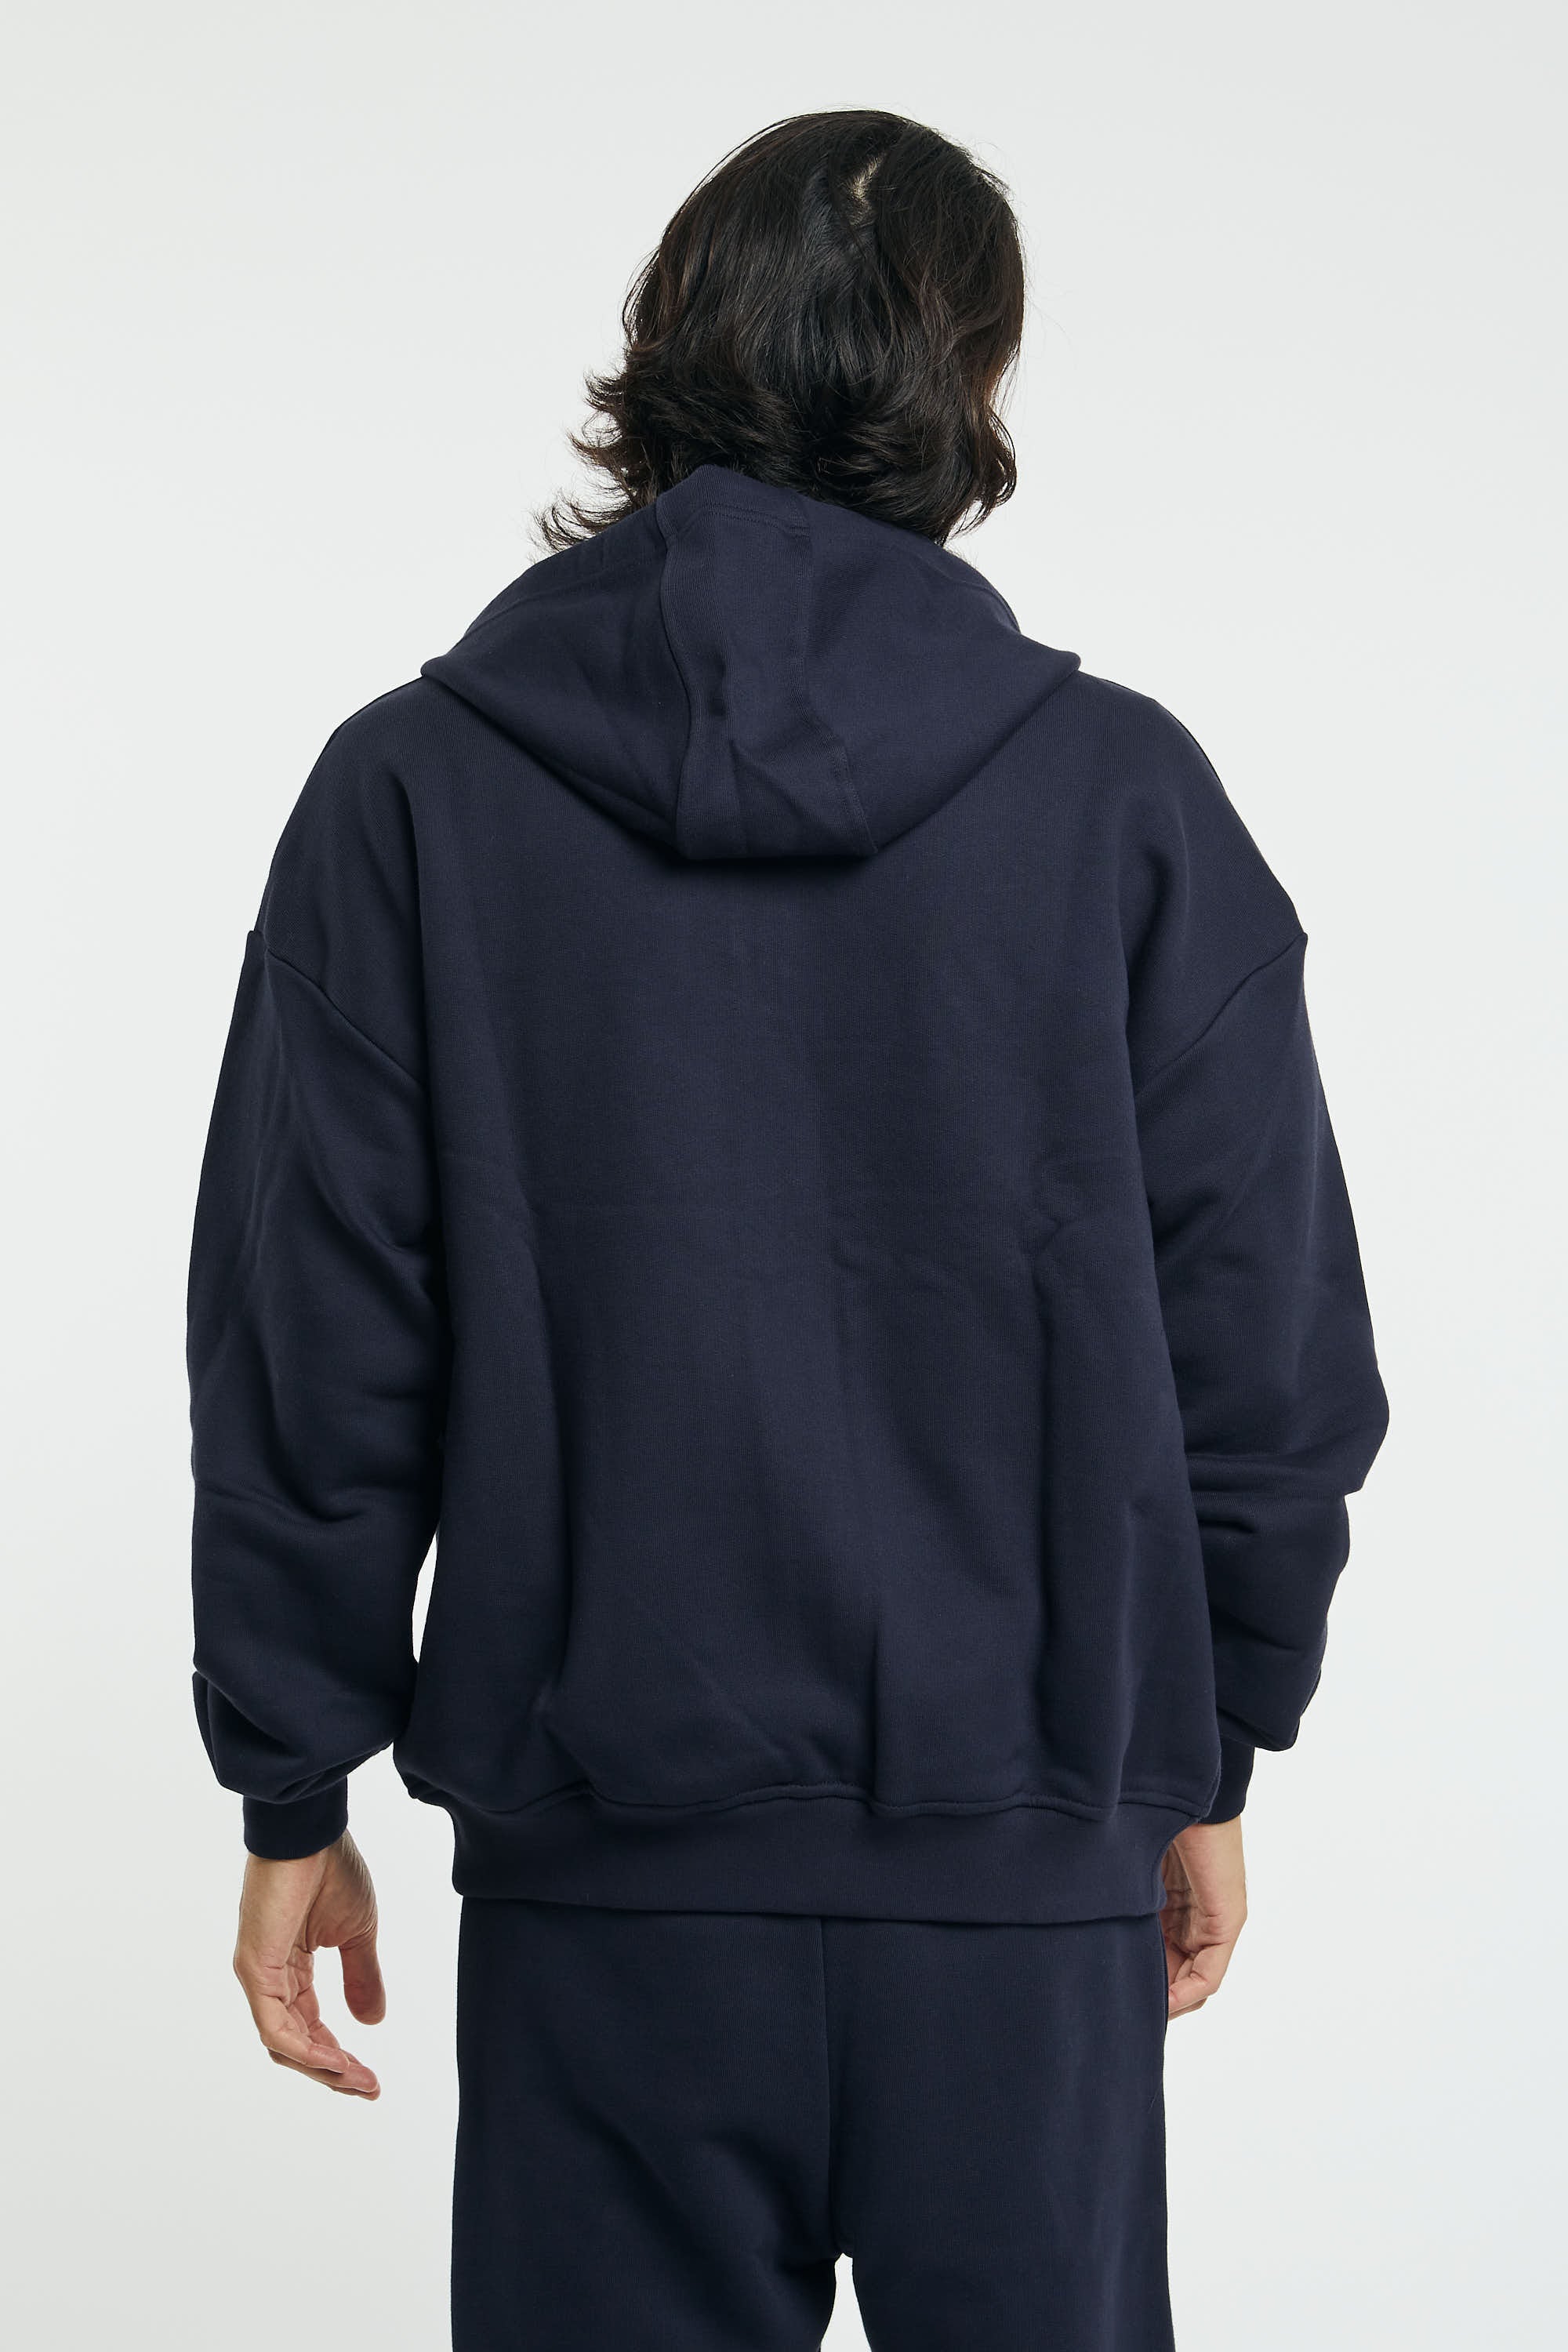 Open sweatshirt with hood - 5